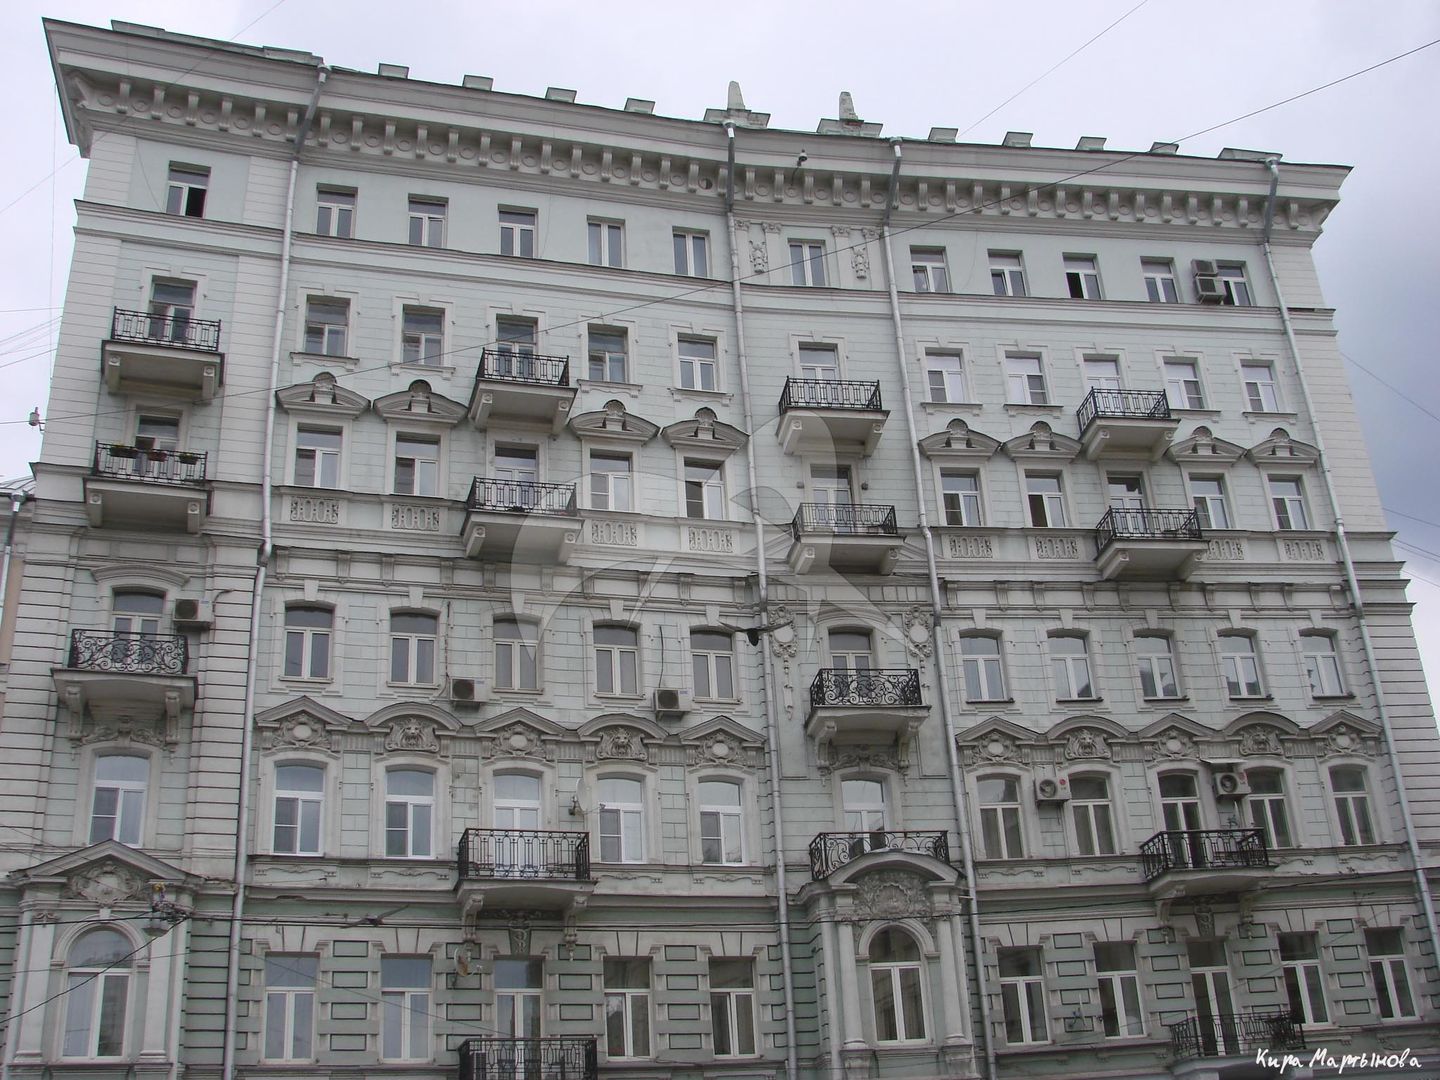 Доходный дом Н.Д. Телешова, 1900 г., арх. С.В. Барков, надстройка 1947 г. В этом здании находится квартира, в которой жил Эйзенштейн Сергей Михайлович в 1920-1934 гг.